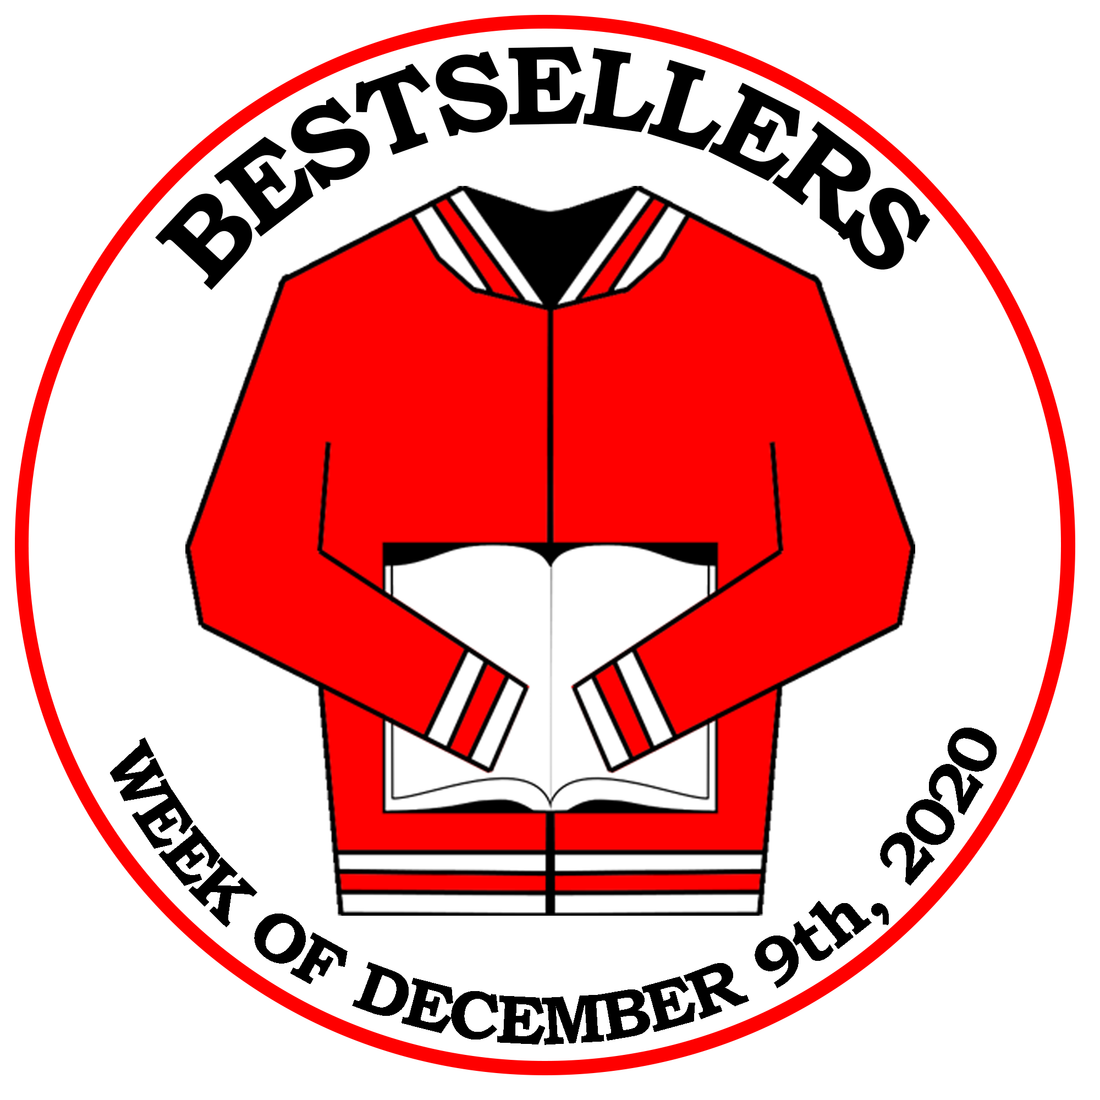 Bestsellers (Week of 12/9/20)